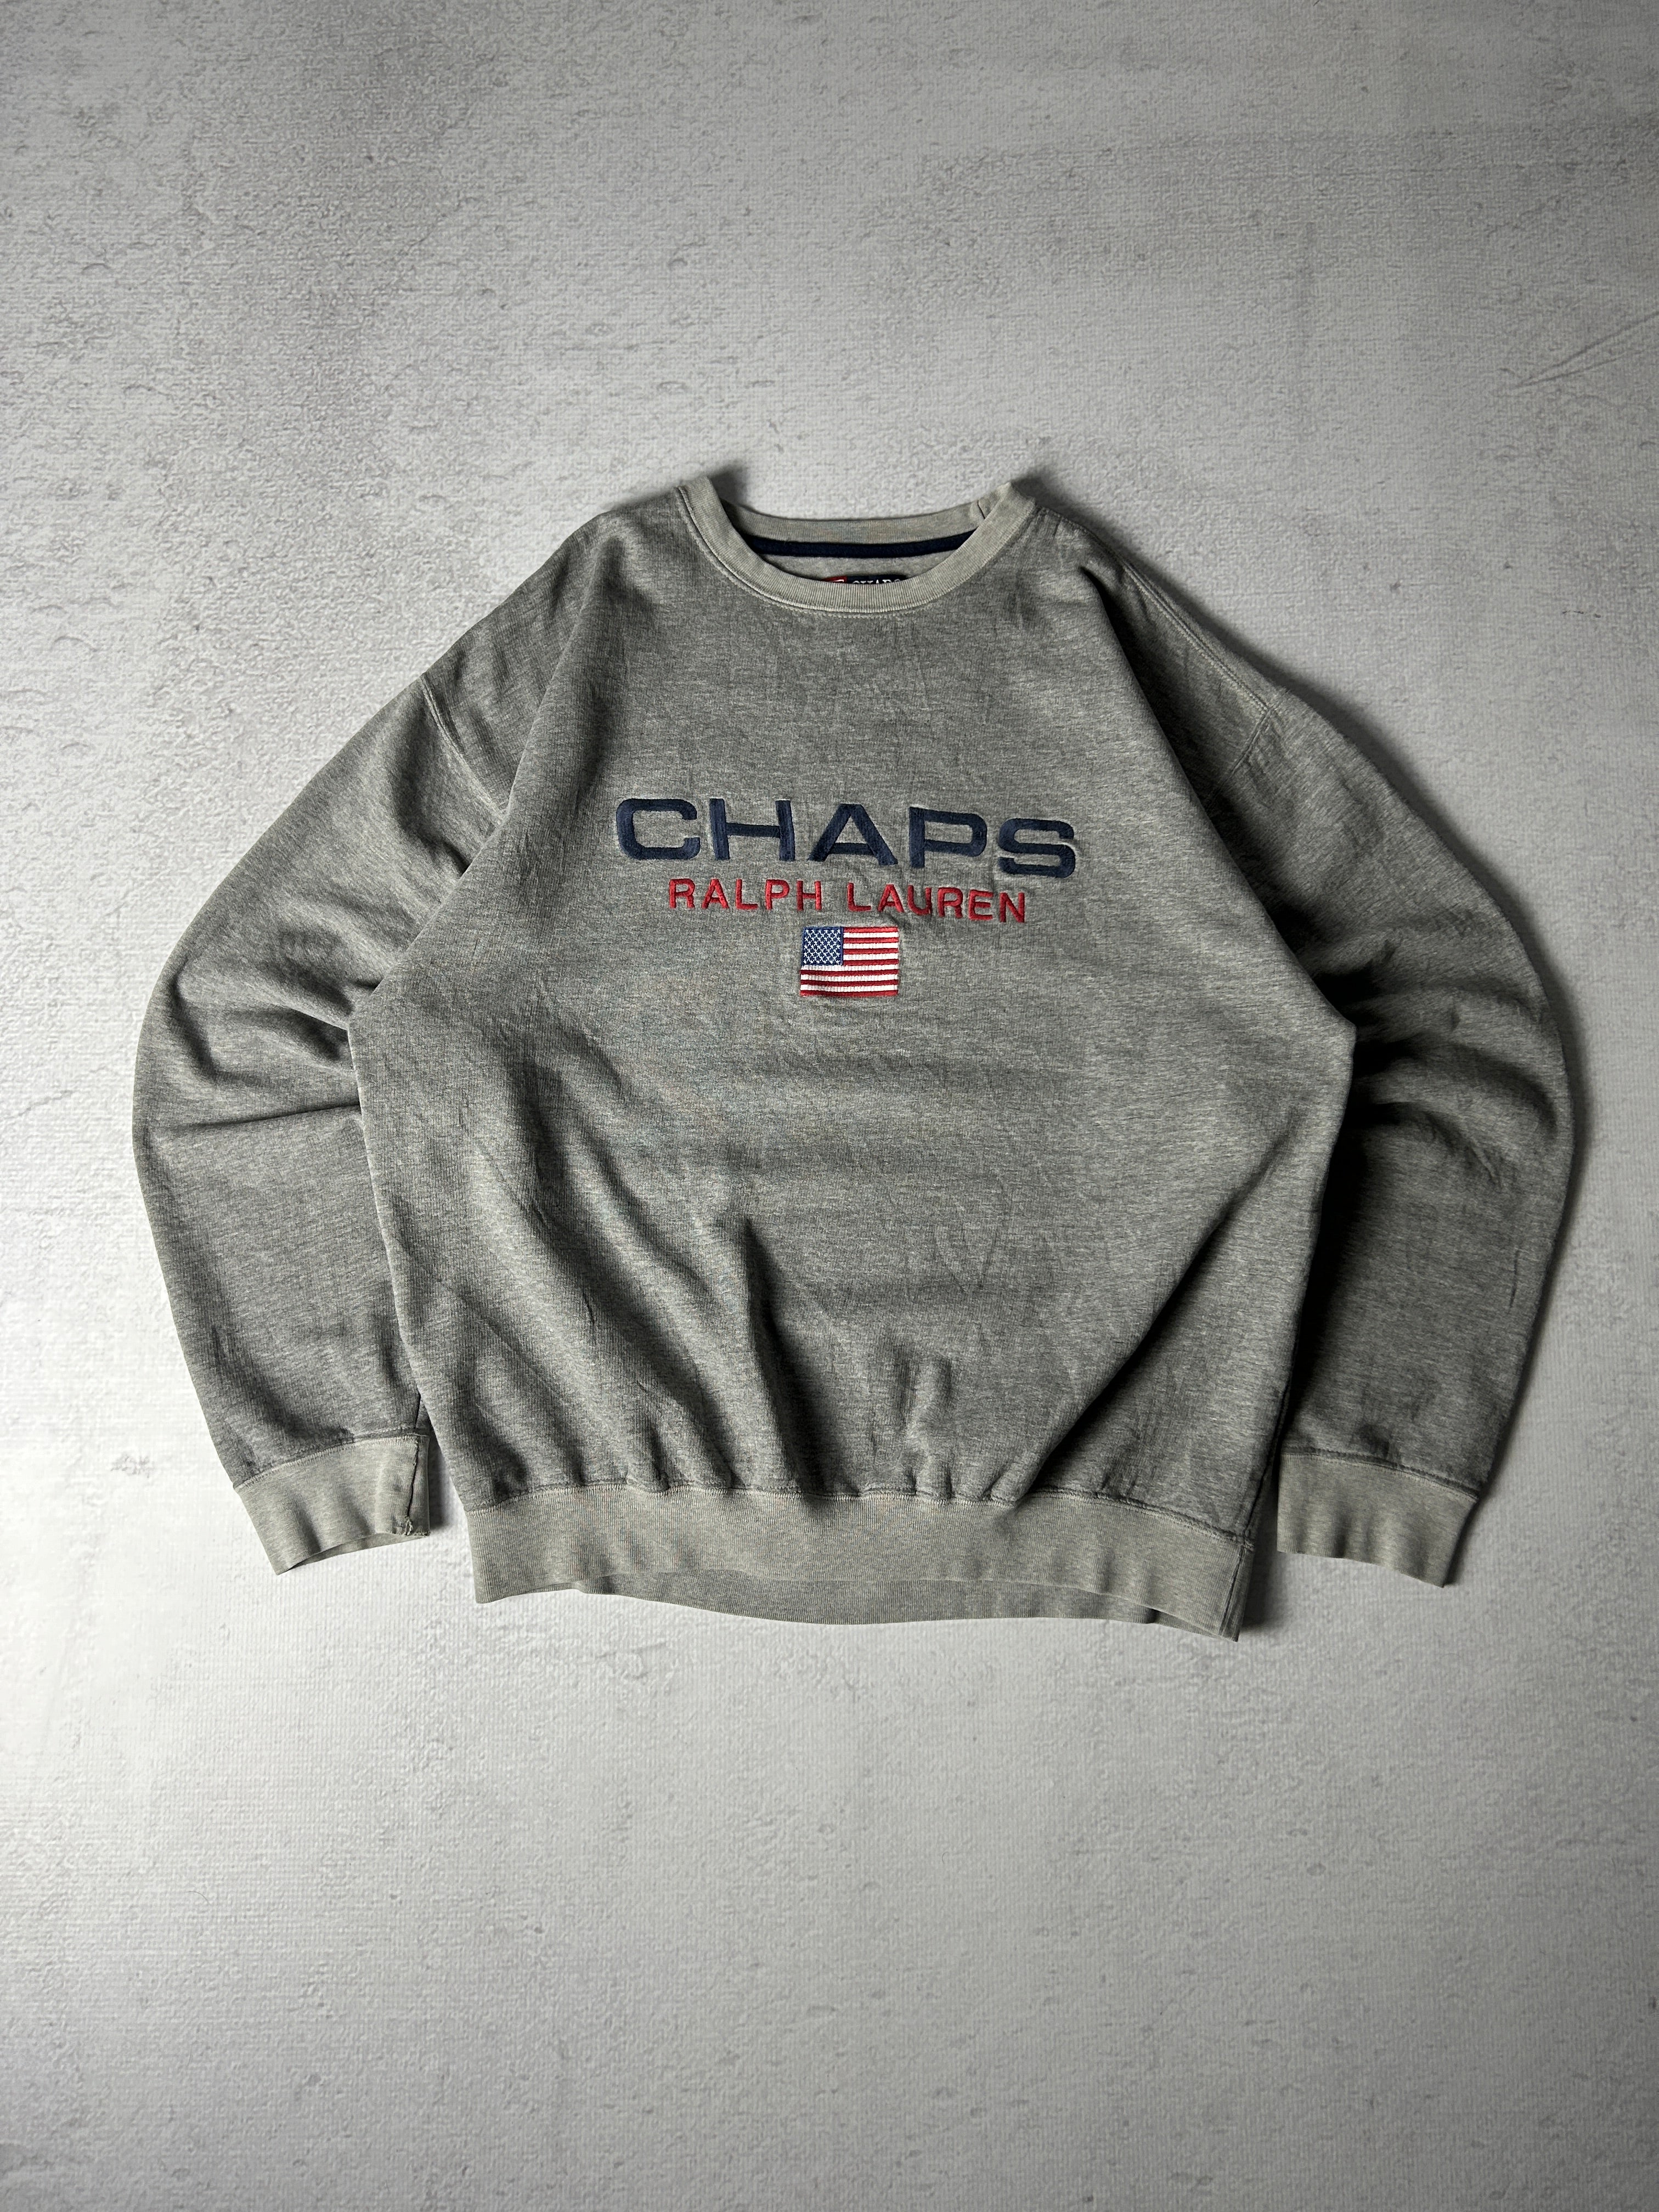 Vintage Chaps Ralph Lauren Crewneck Sweatshirt - Men's Large